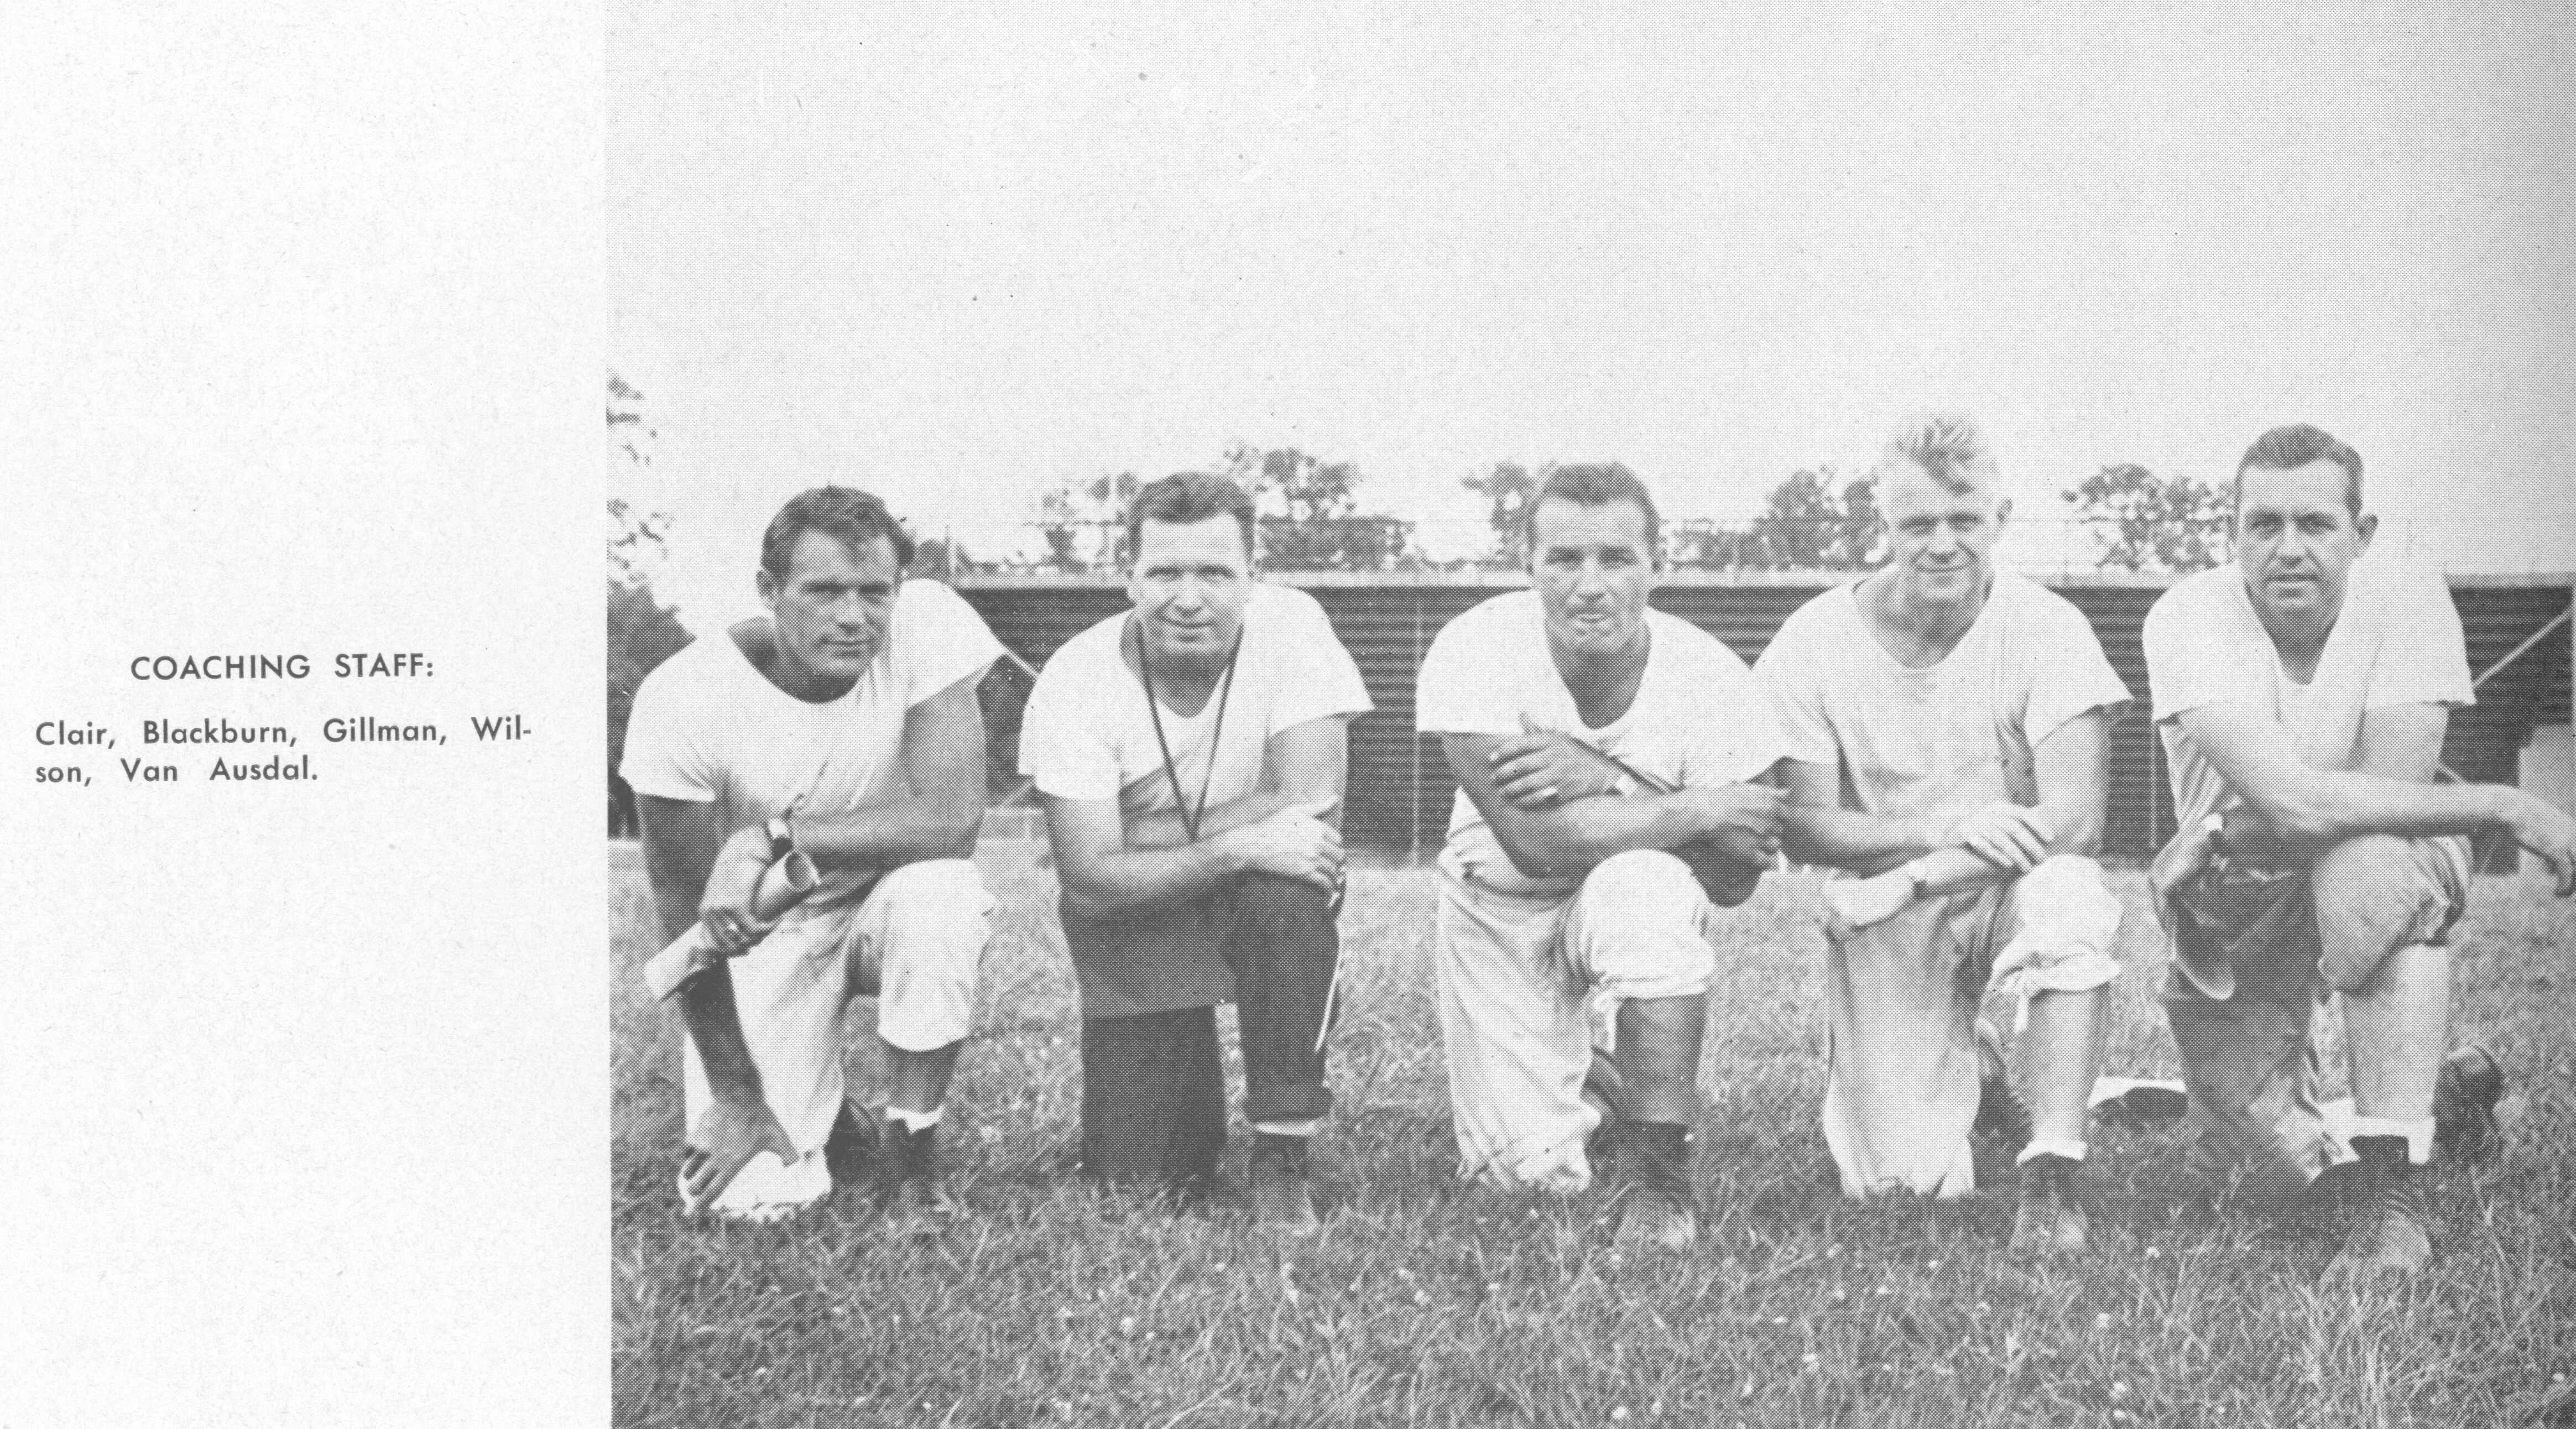 1946 Miami Staff (1947-Recensio-Archives).tif